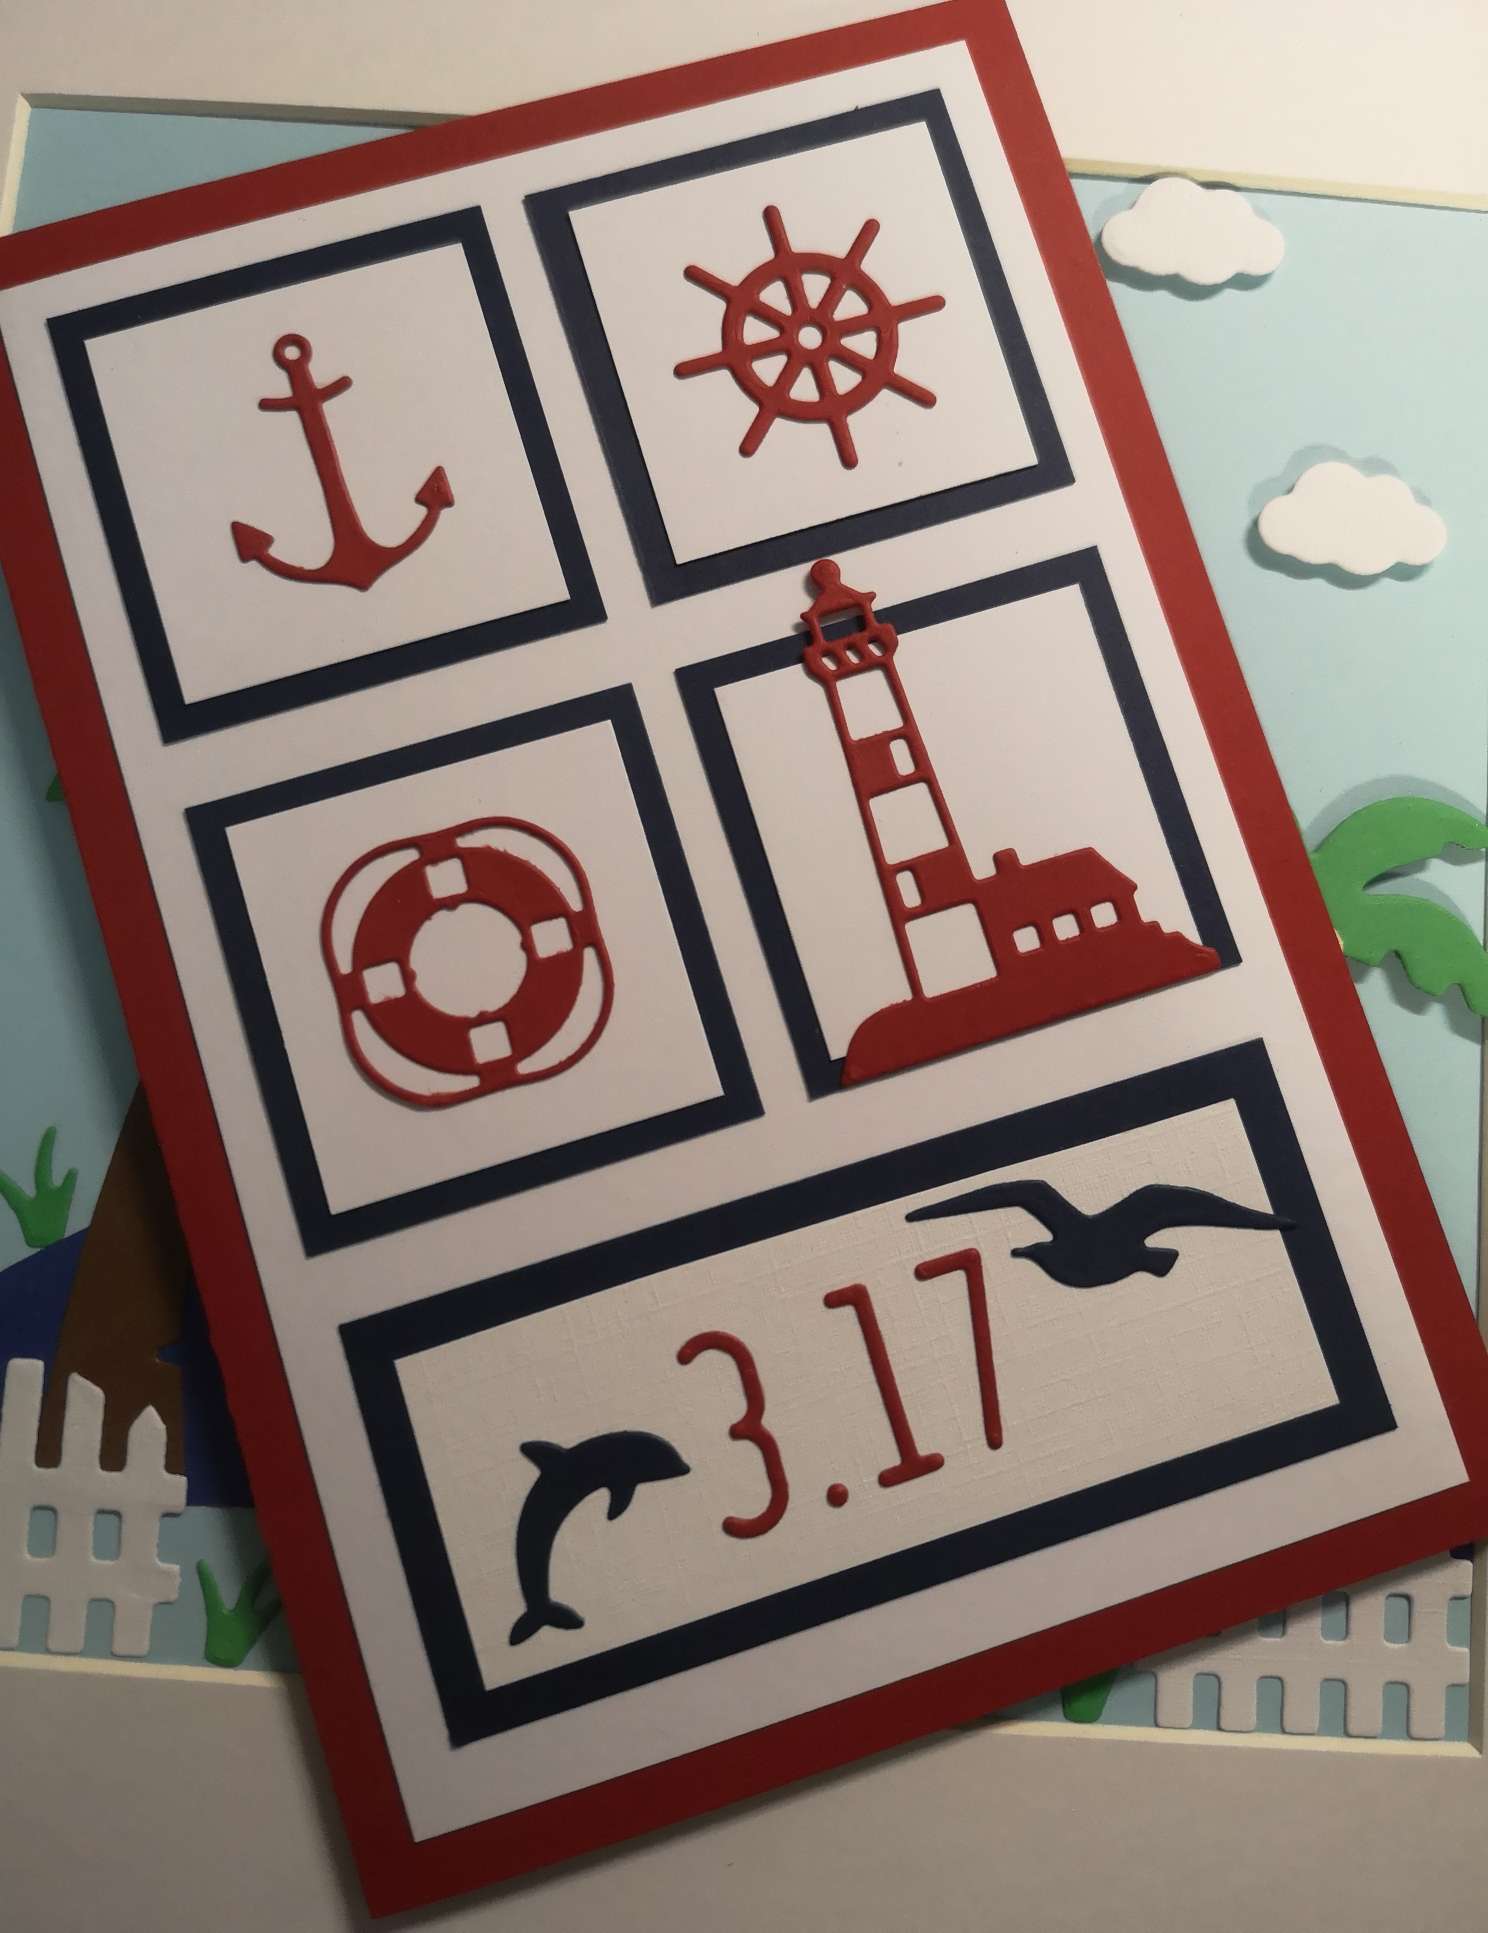 所有节日皆可以做卡片系列，3.17国际航海日